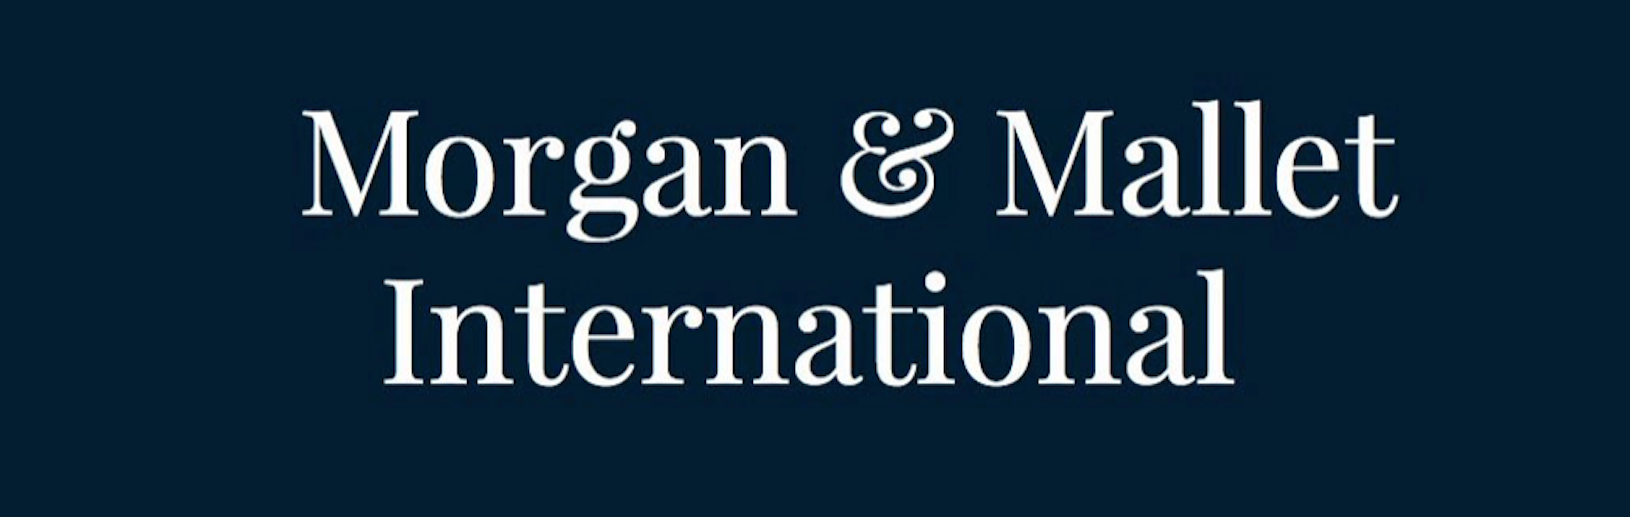 Banner Morgan & Mallet International